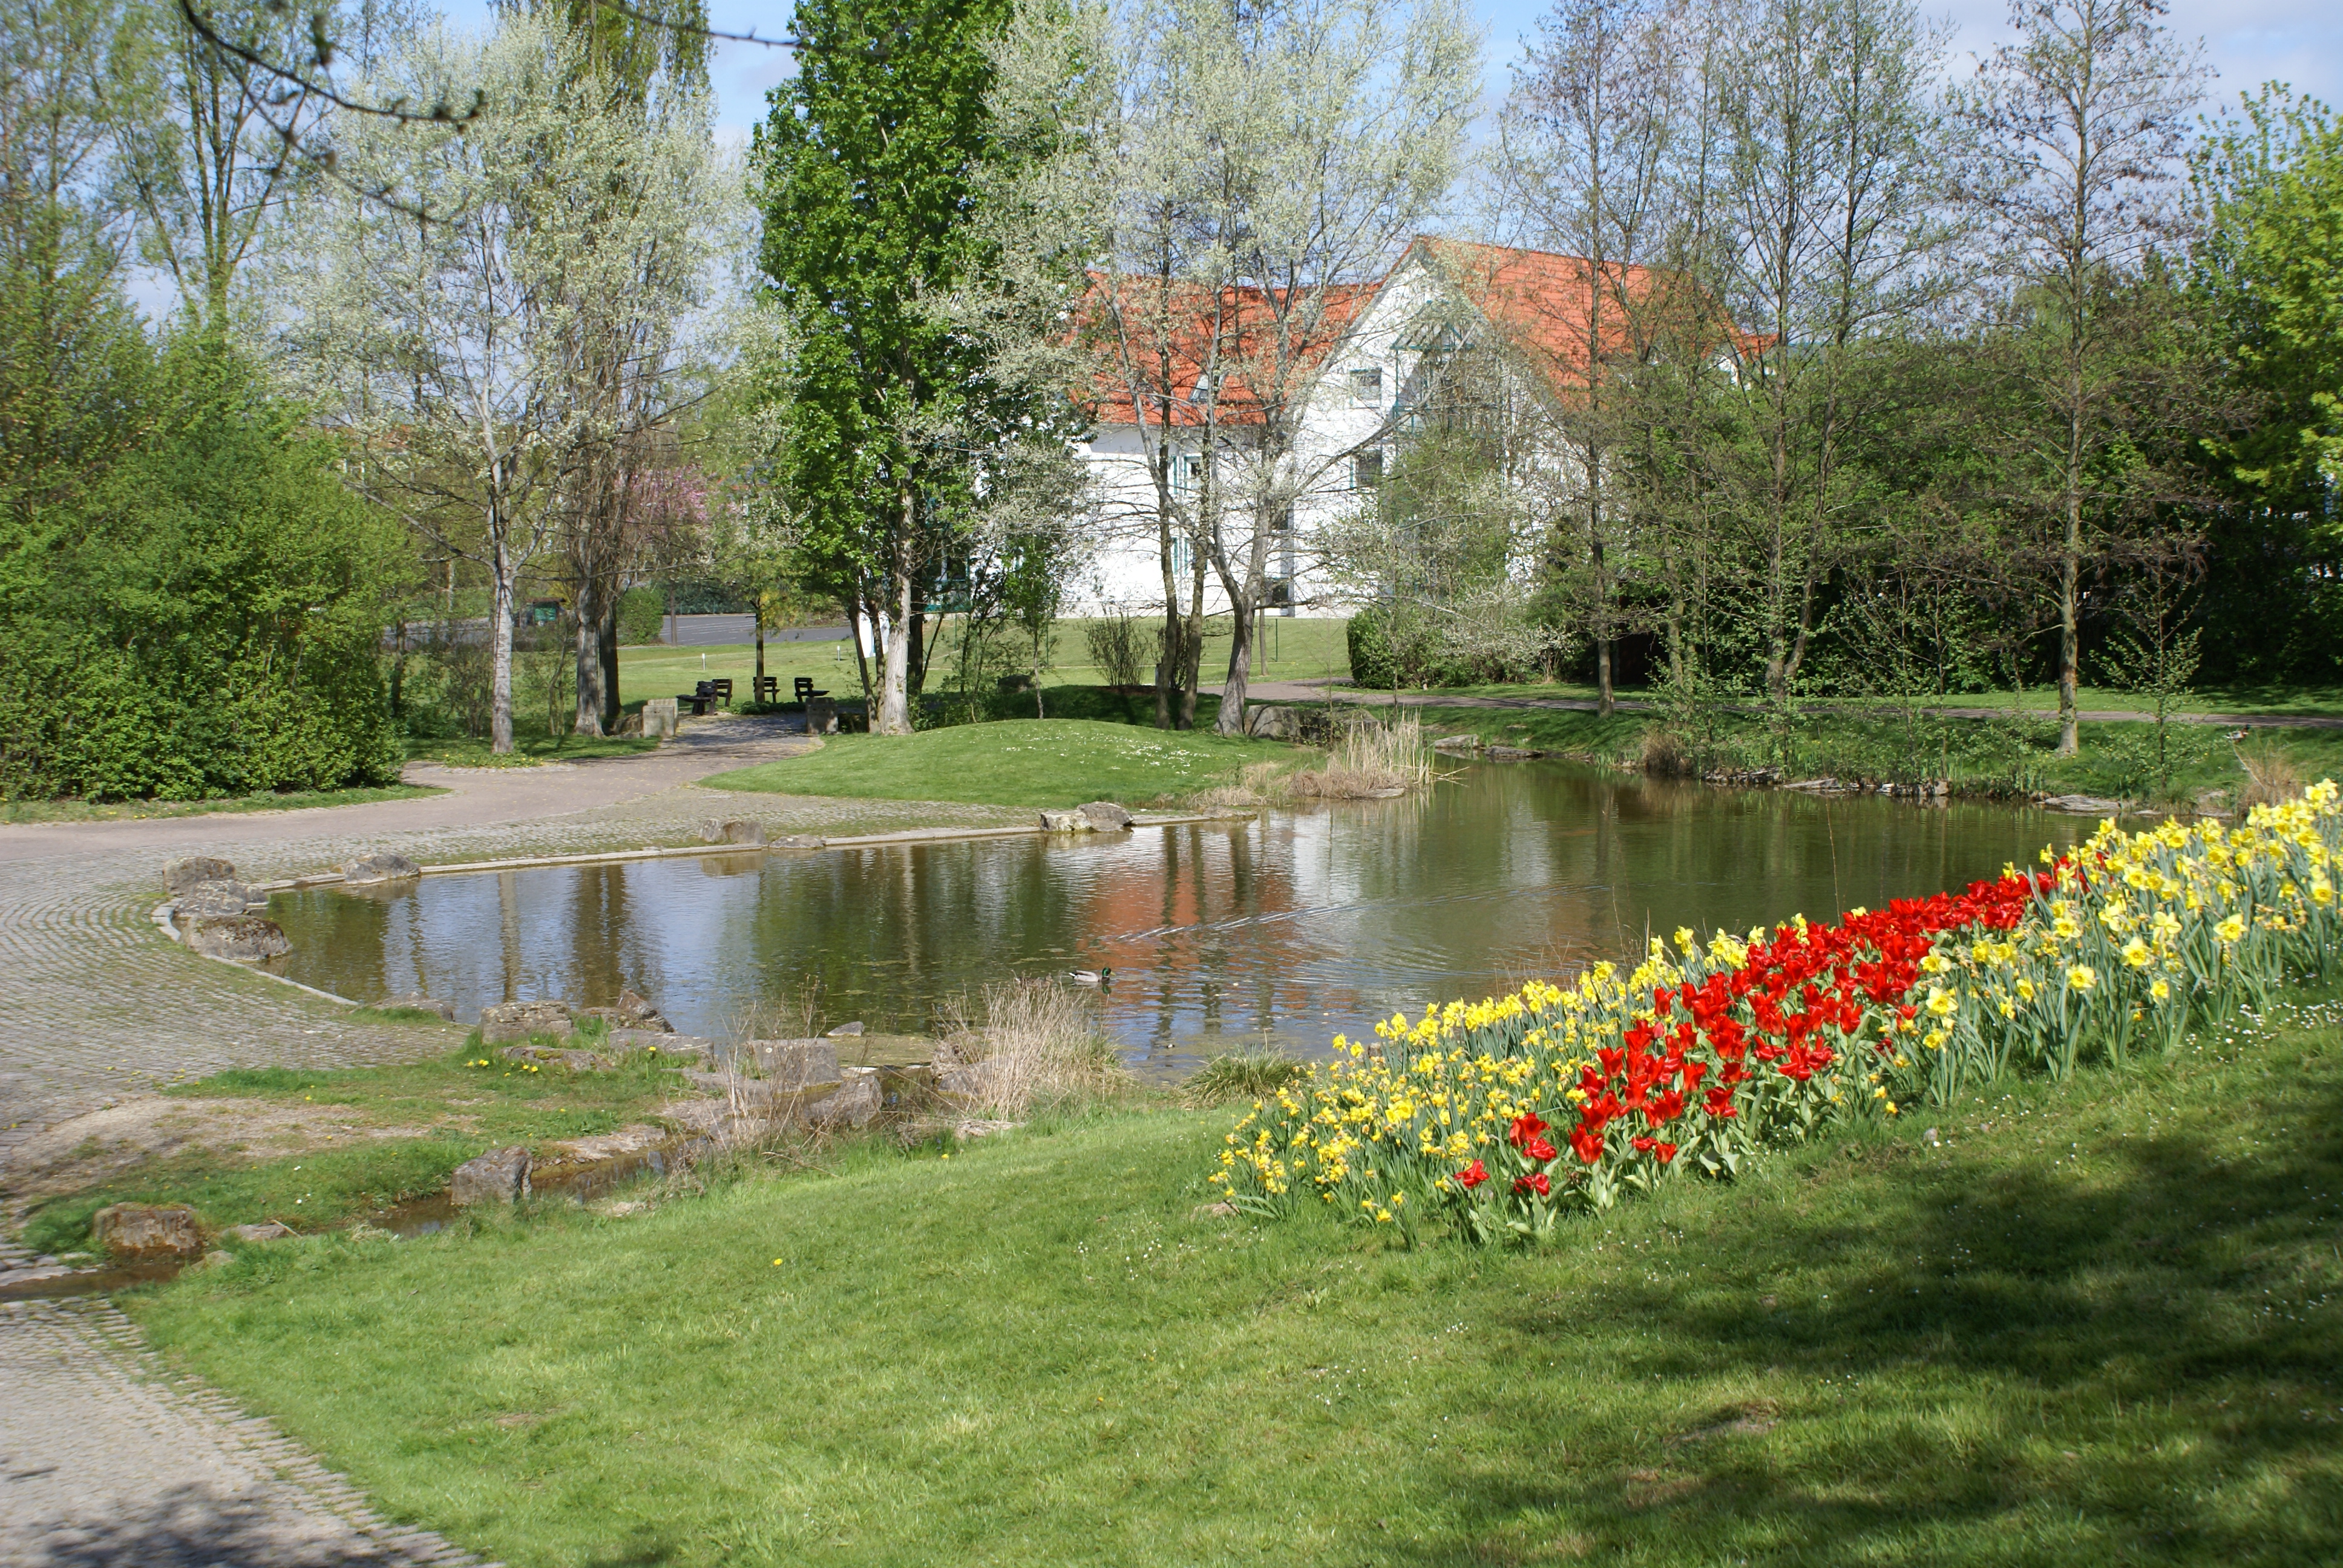 Der kleine Teich mit bunter Blumenwiese